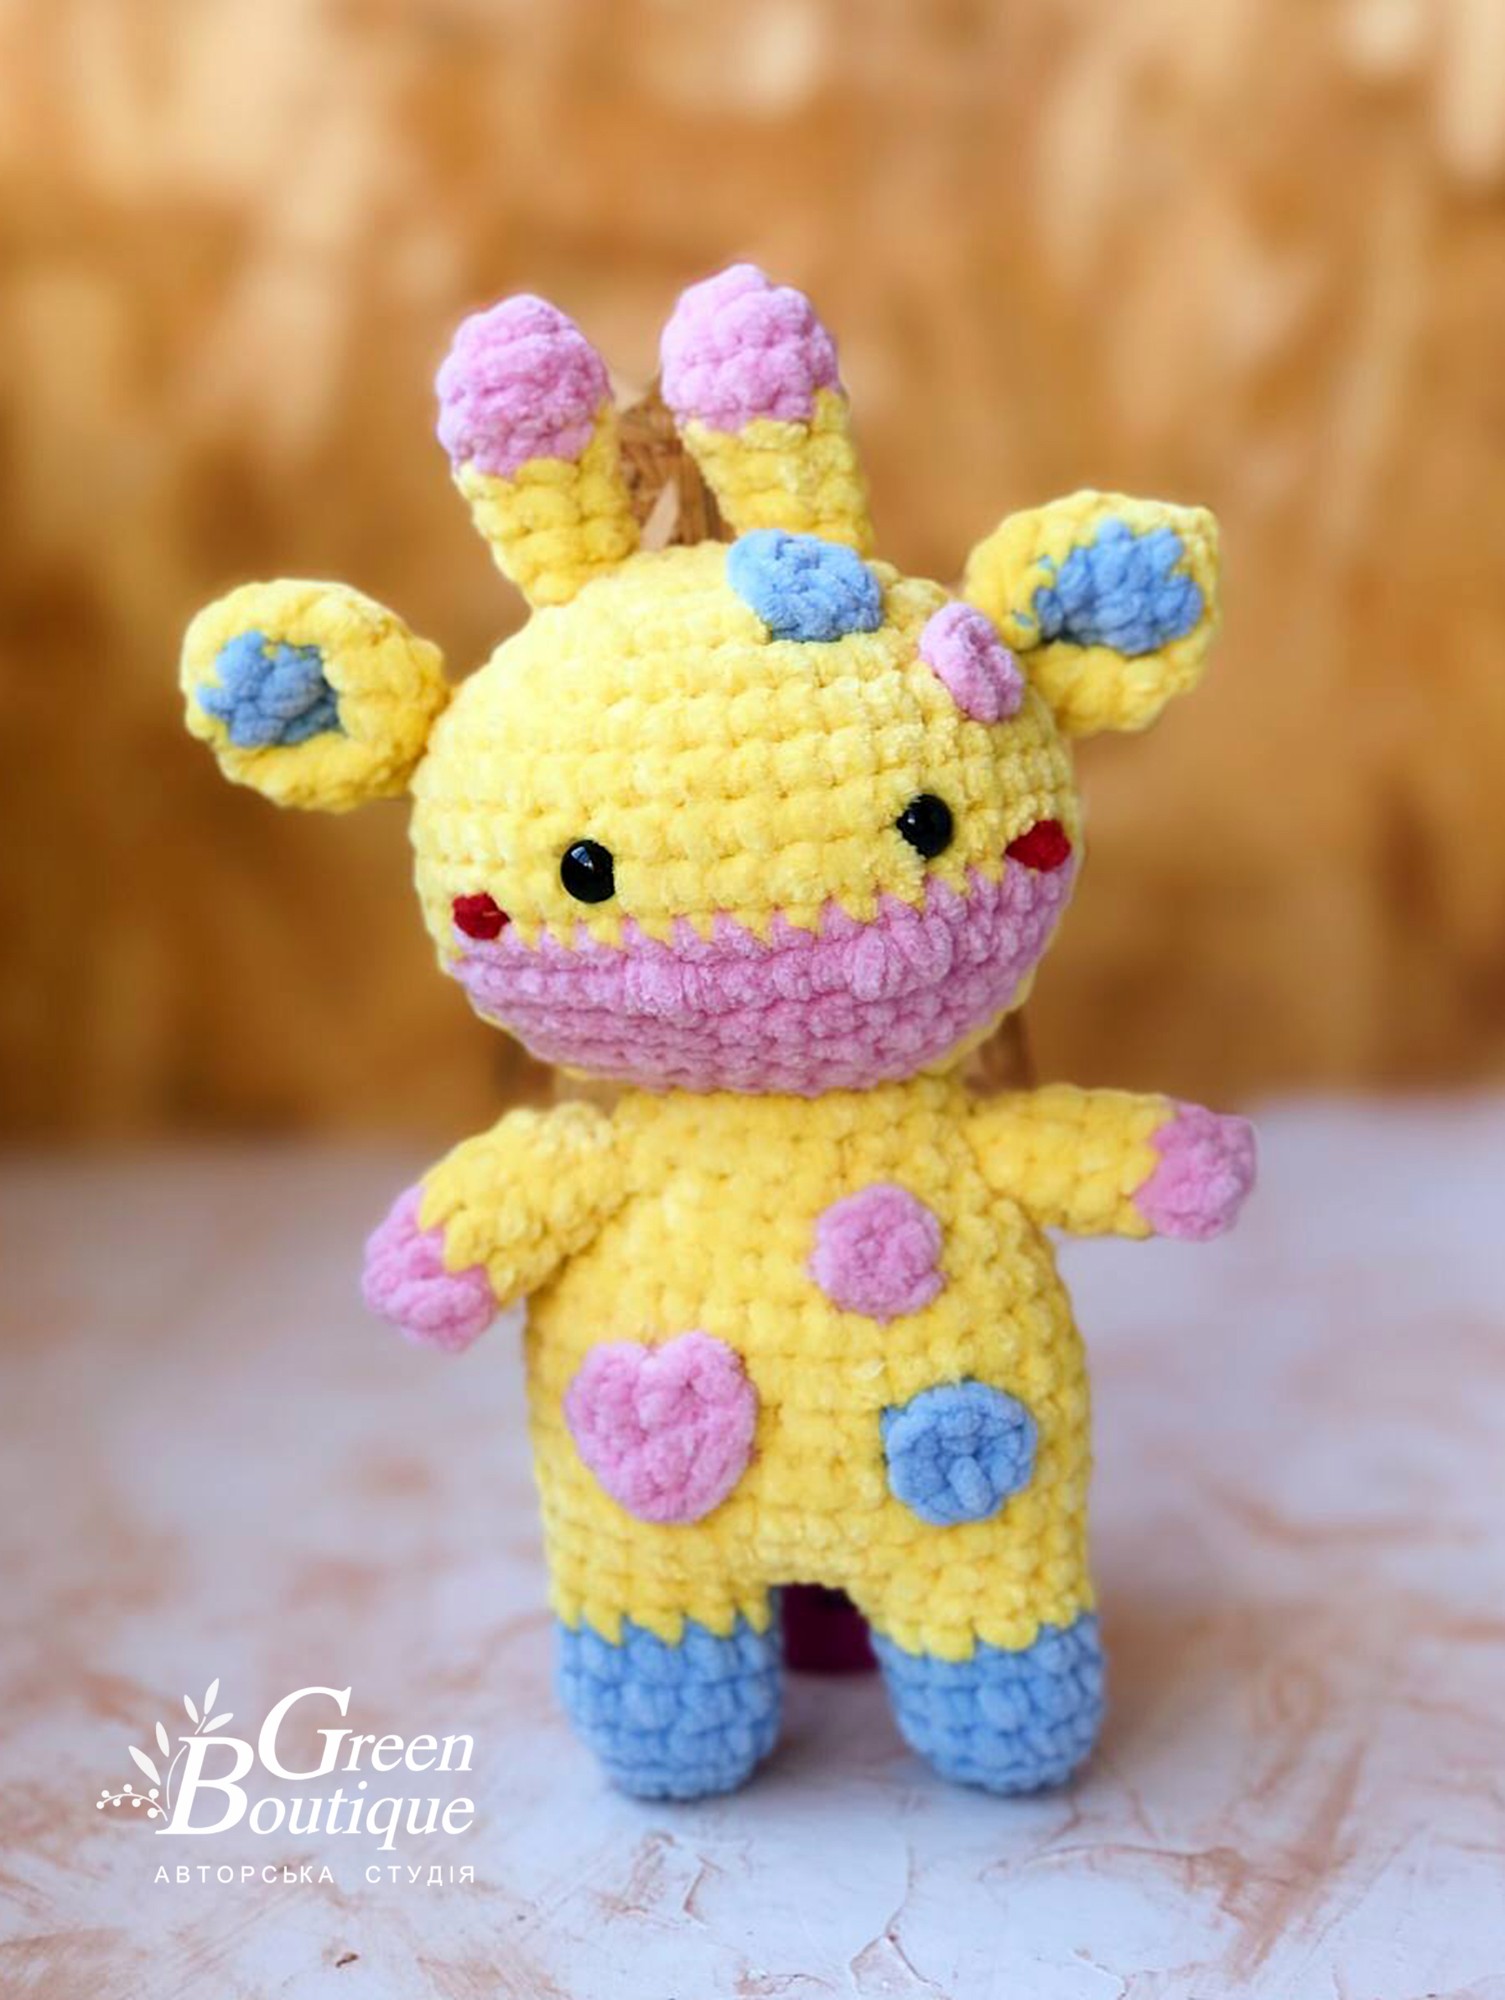 Plush toy giraffe Zhuyka